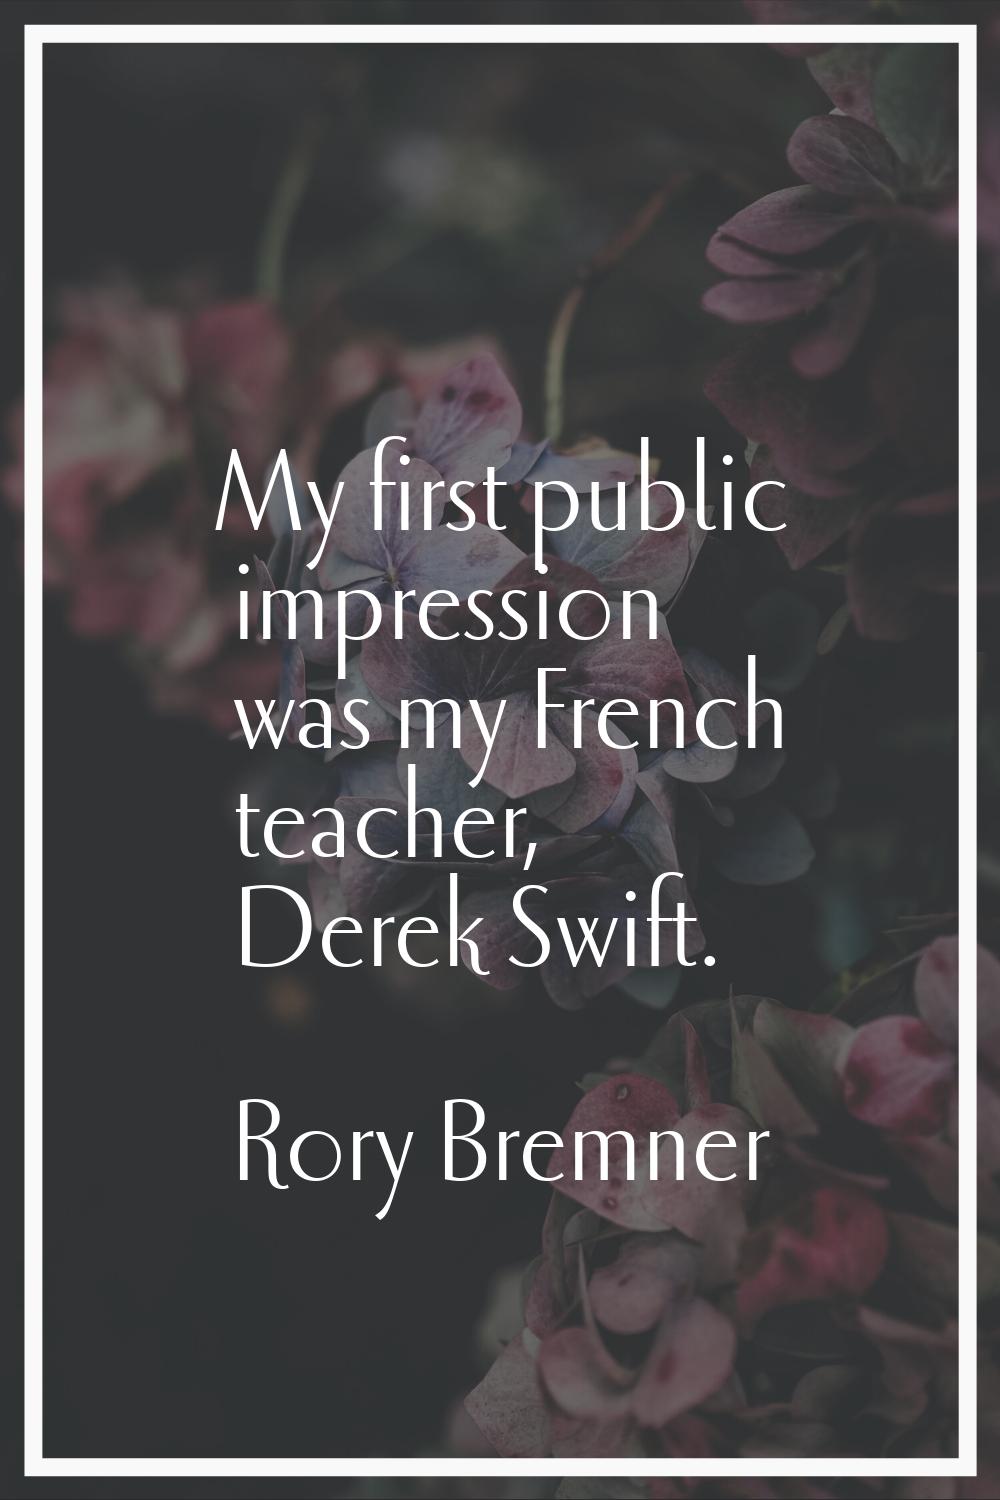 My first public impression was my French teacher, Derek Swift.